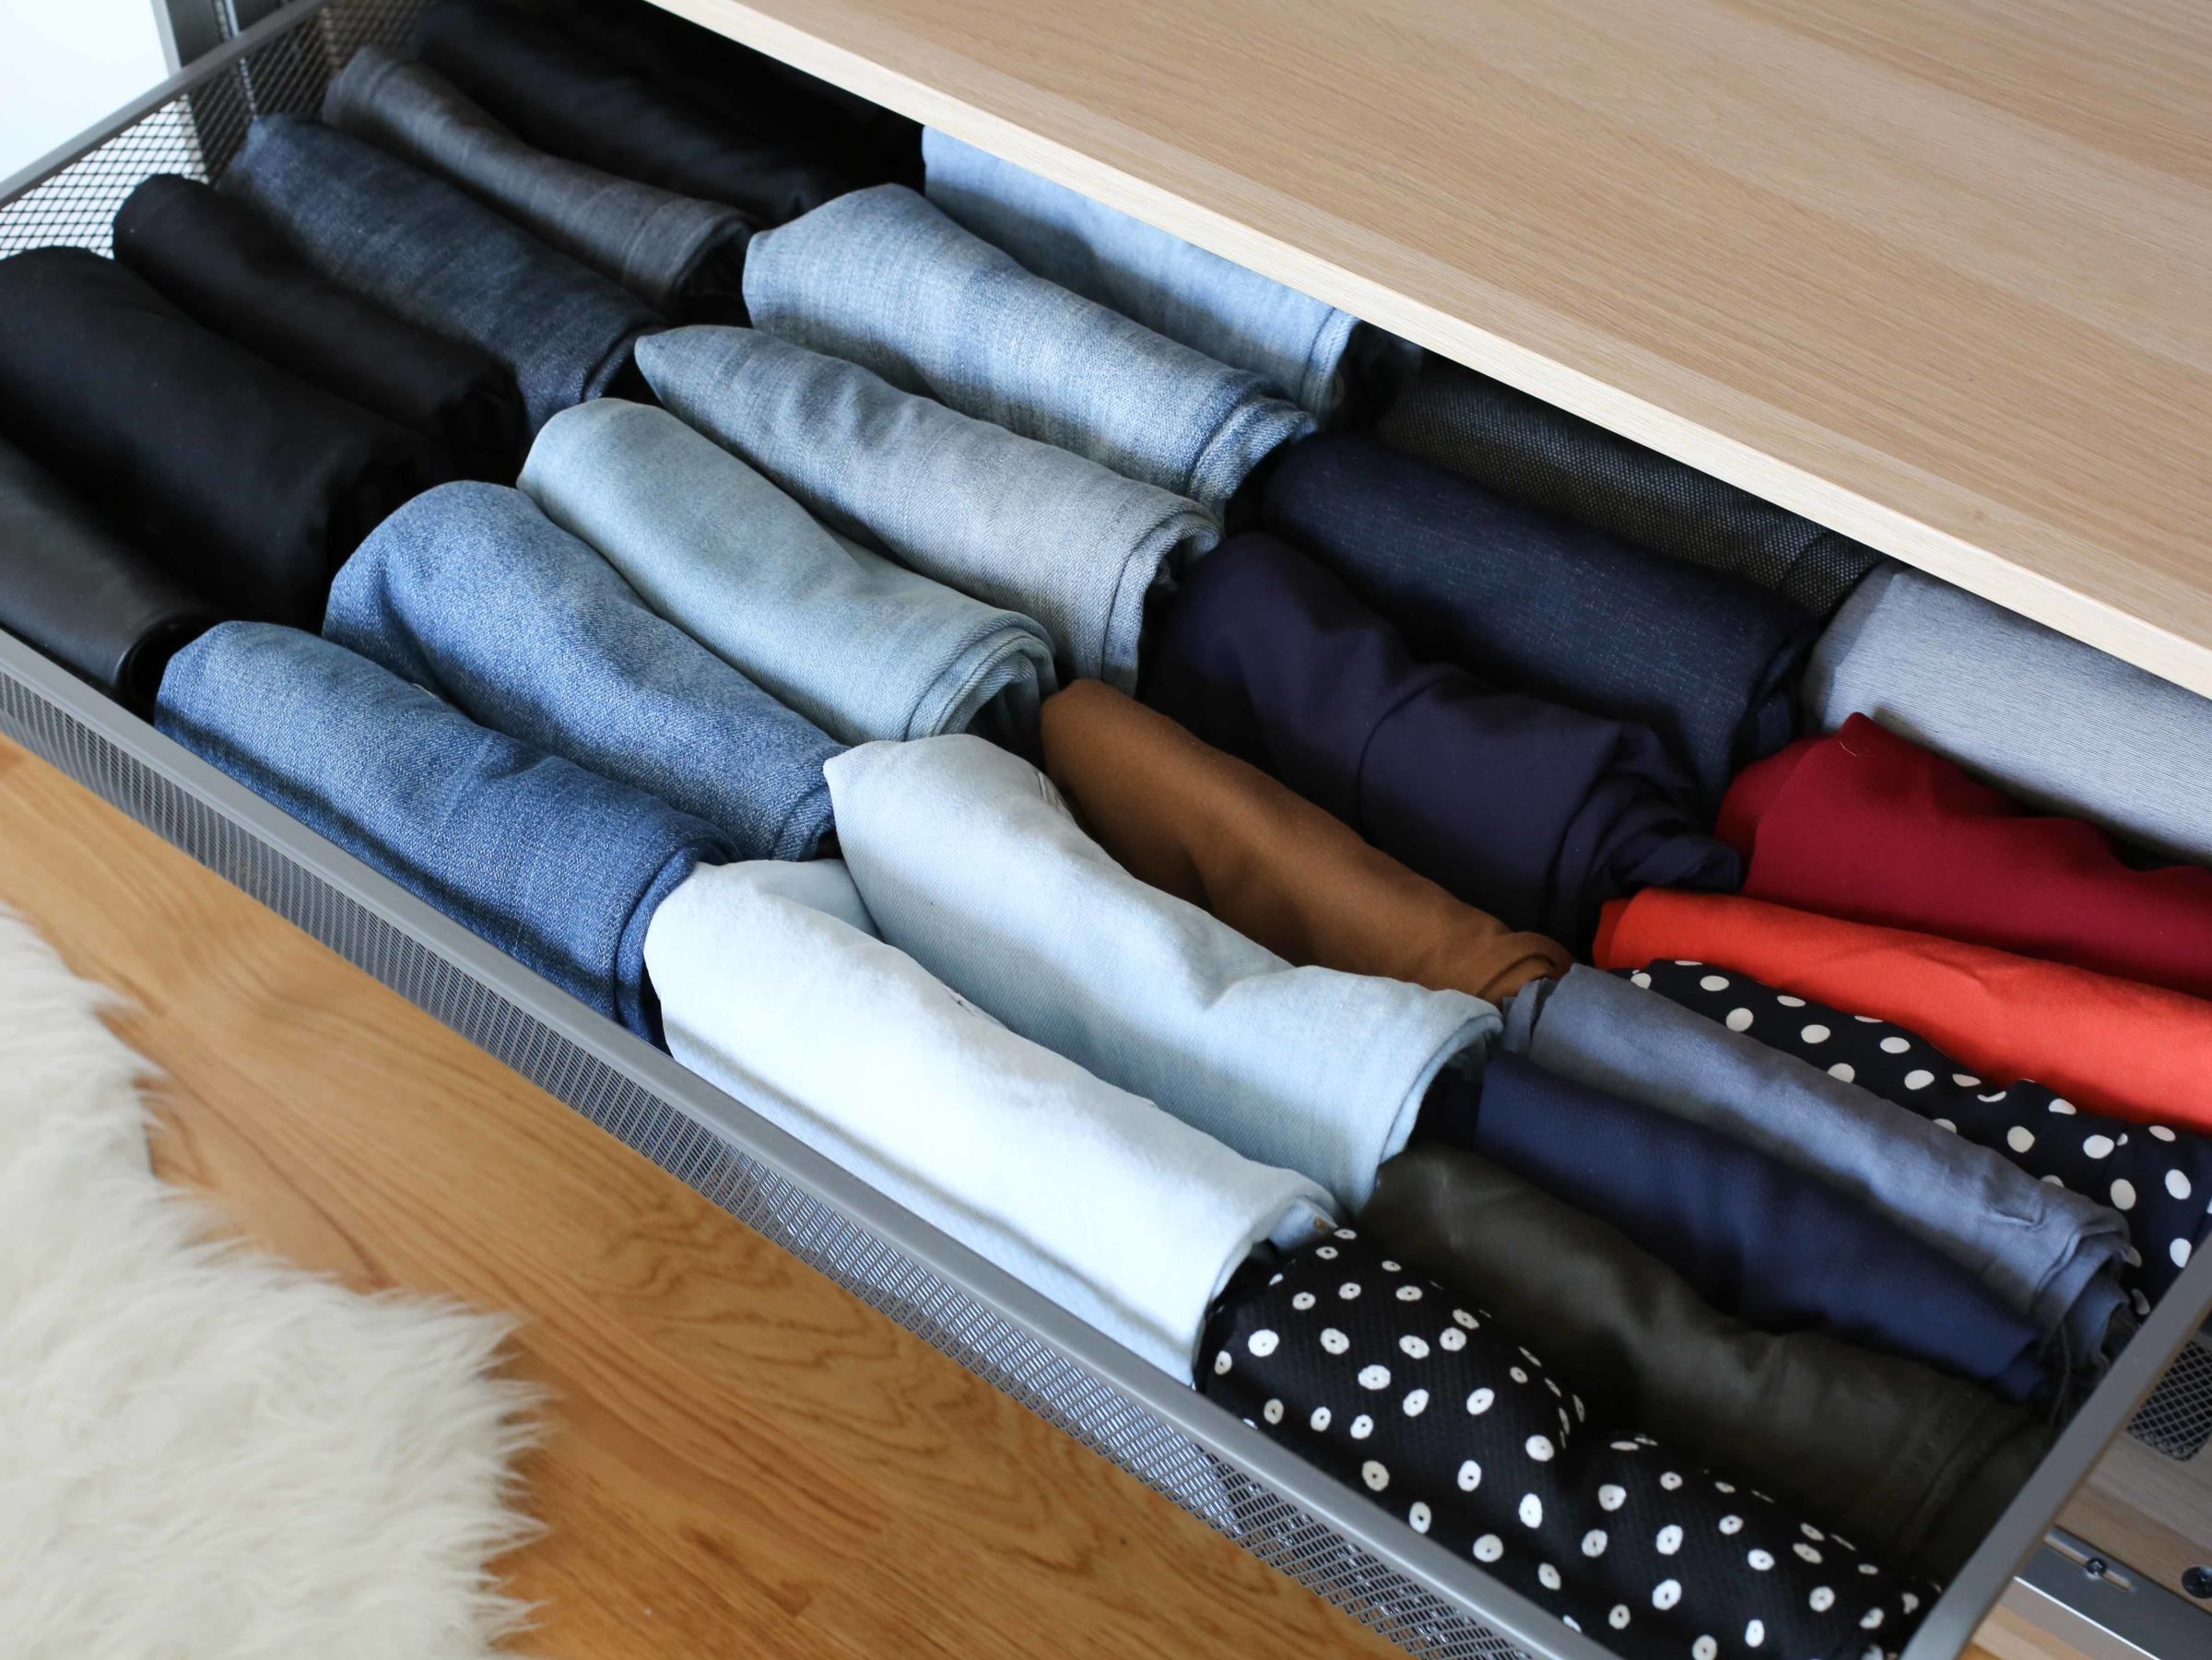 Armazenamento: Como dobrar suas roupas usando o método Marie Kondo?